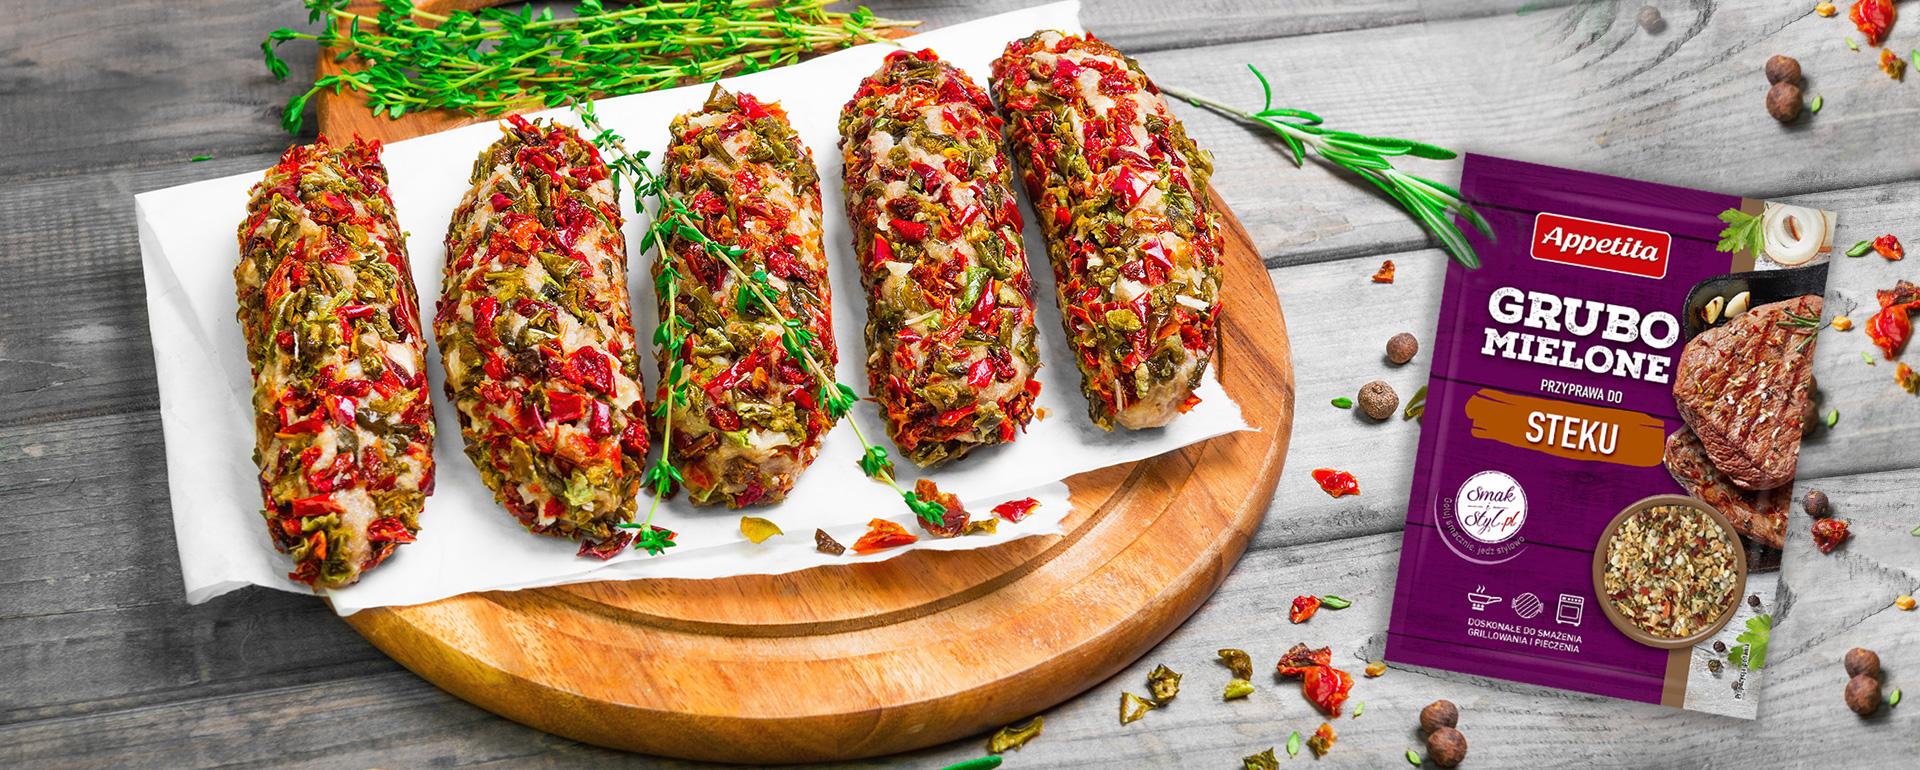 Lula kebab - armeńskie kofty